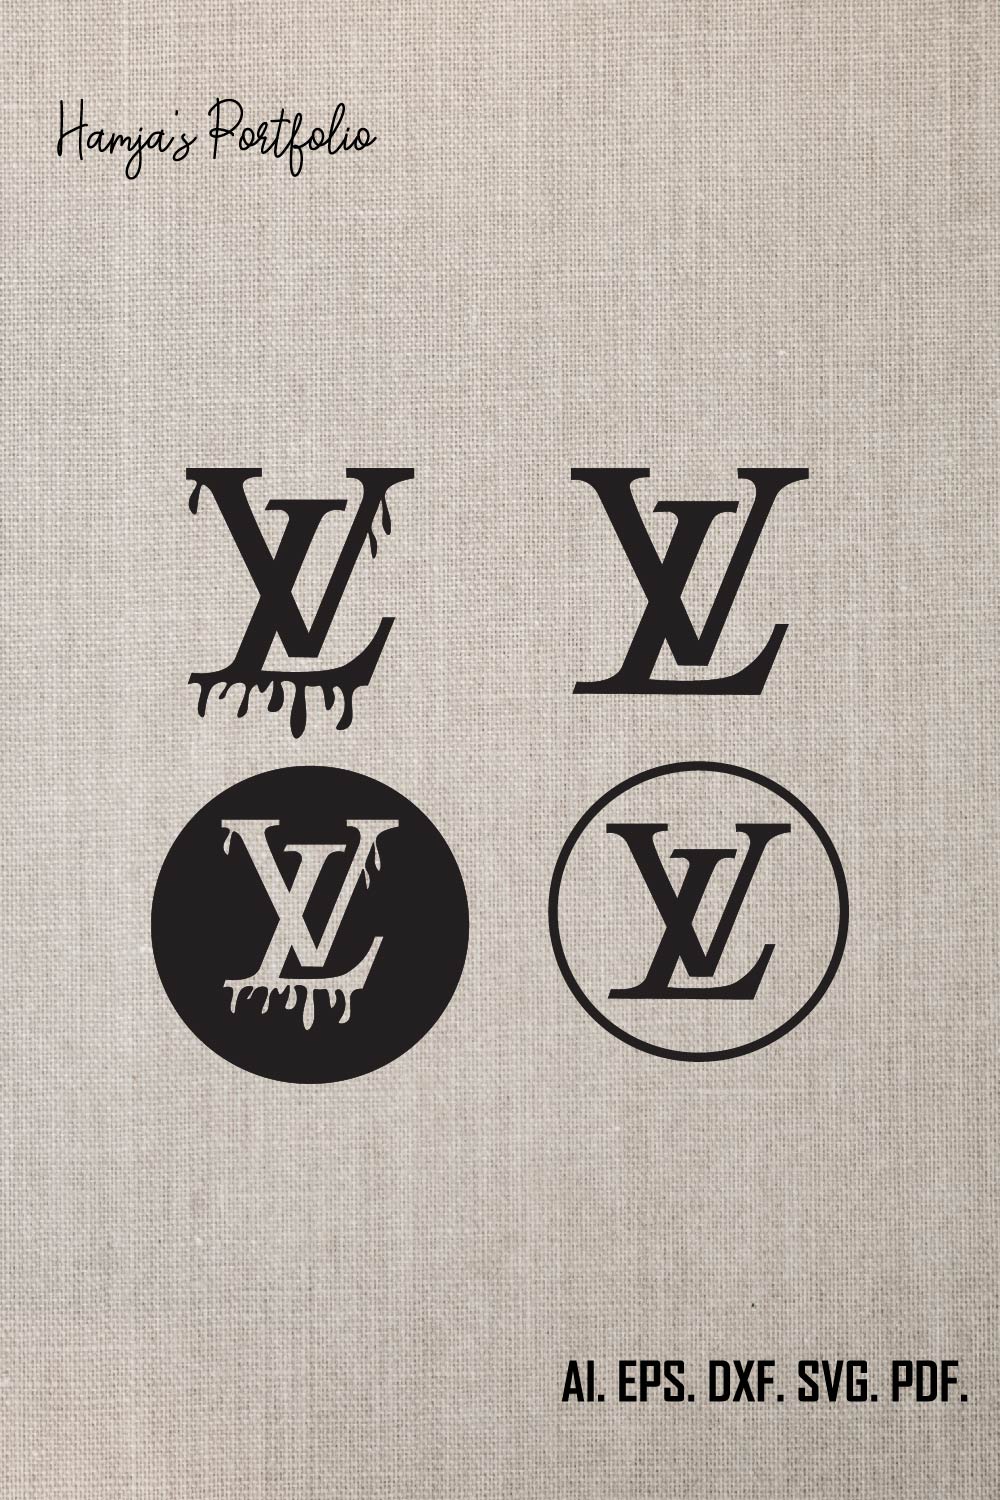 Louis Vuitton SVG Bundle ll Fashion Brands Logo Bundle, Luxury Brands Logo SVG , Louis Vuitton SVG bundle  pinterest preview image.